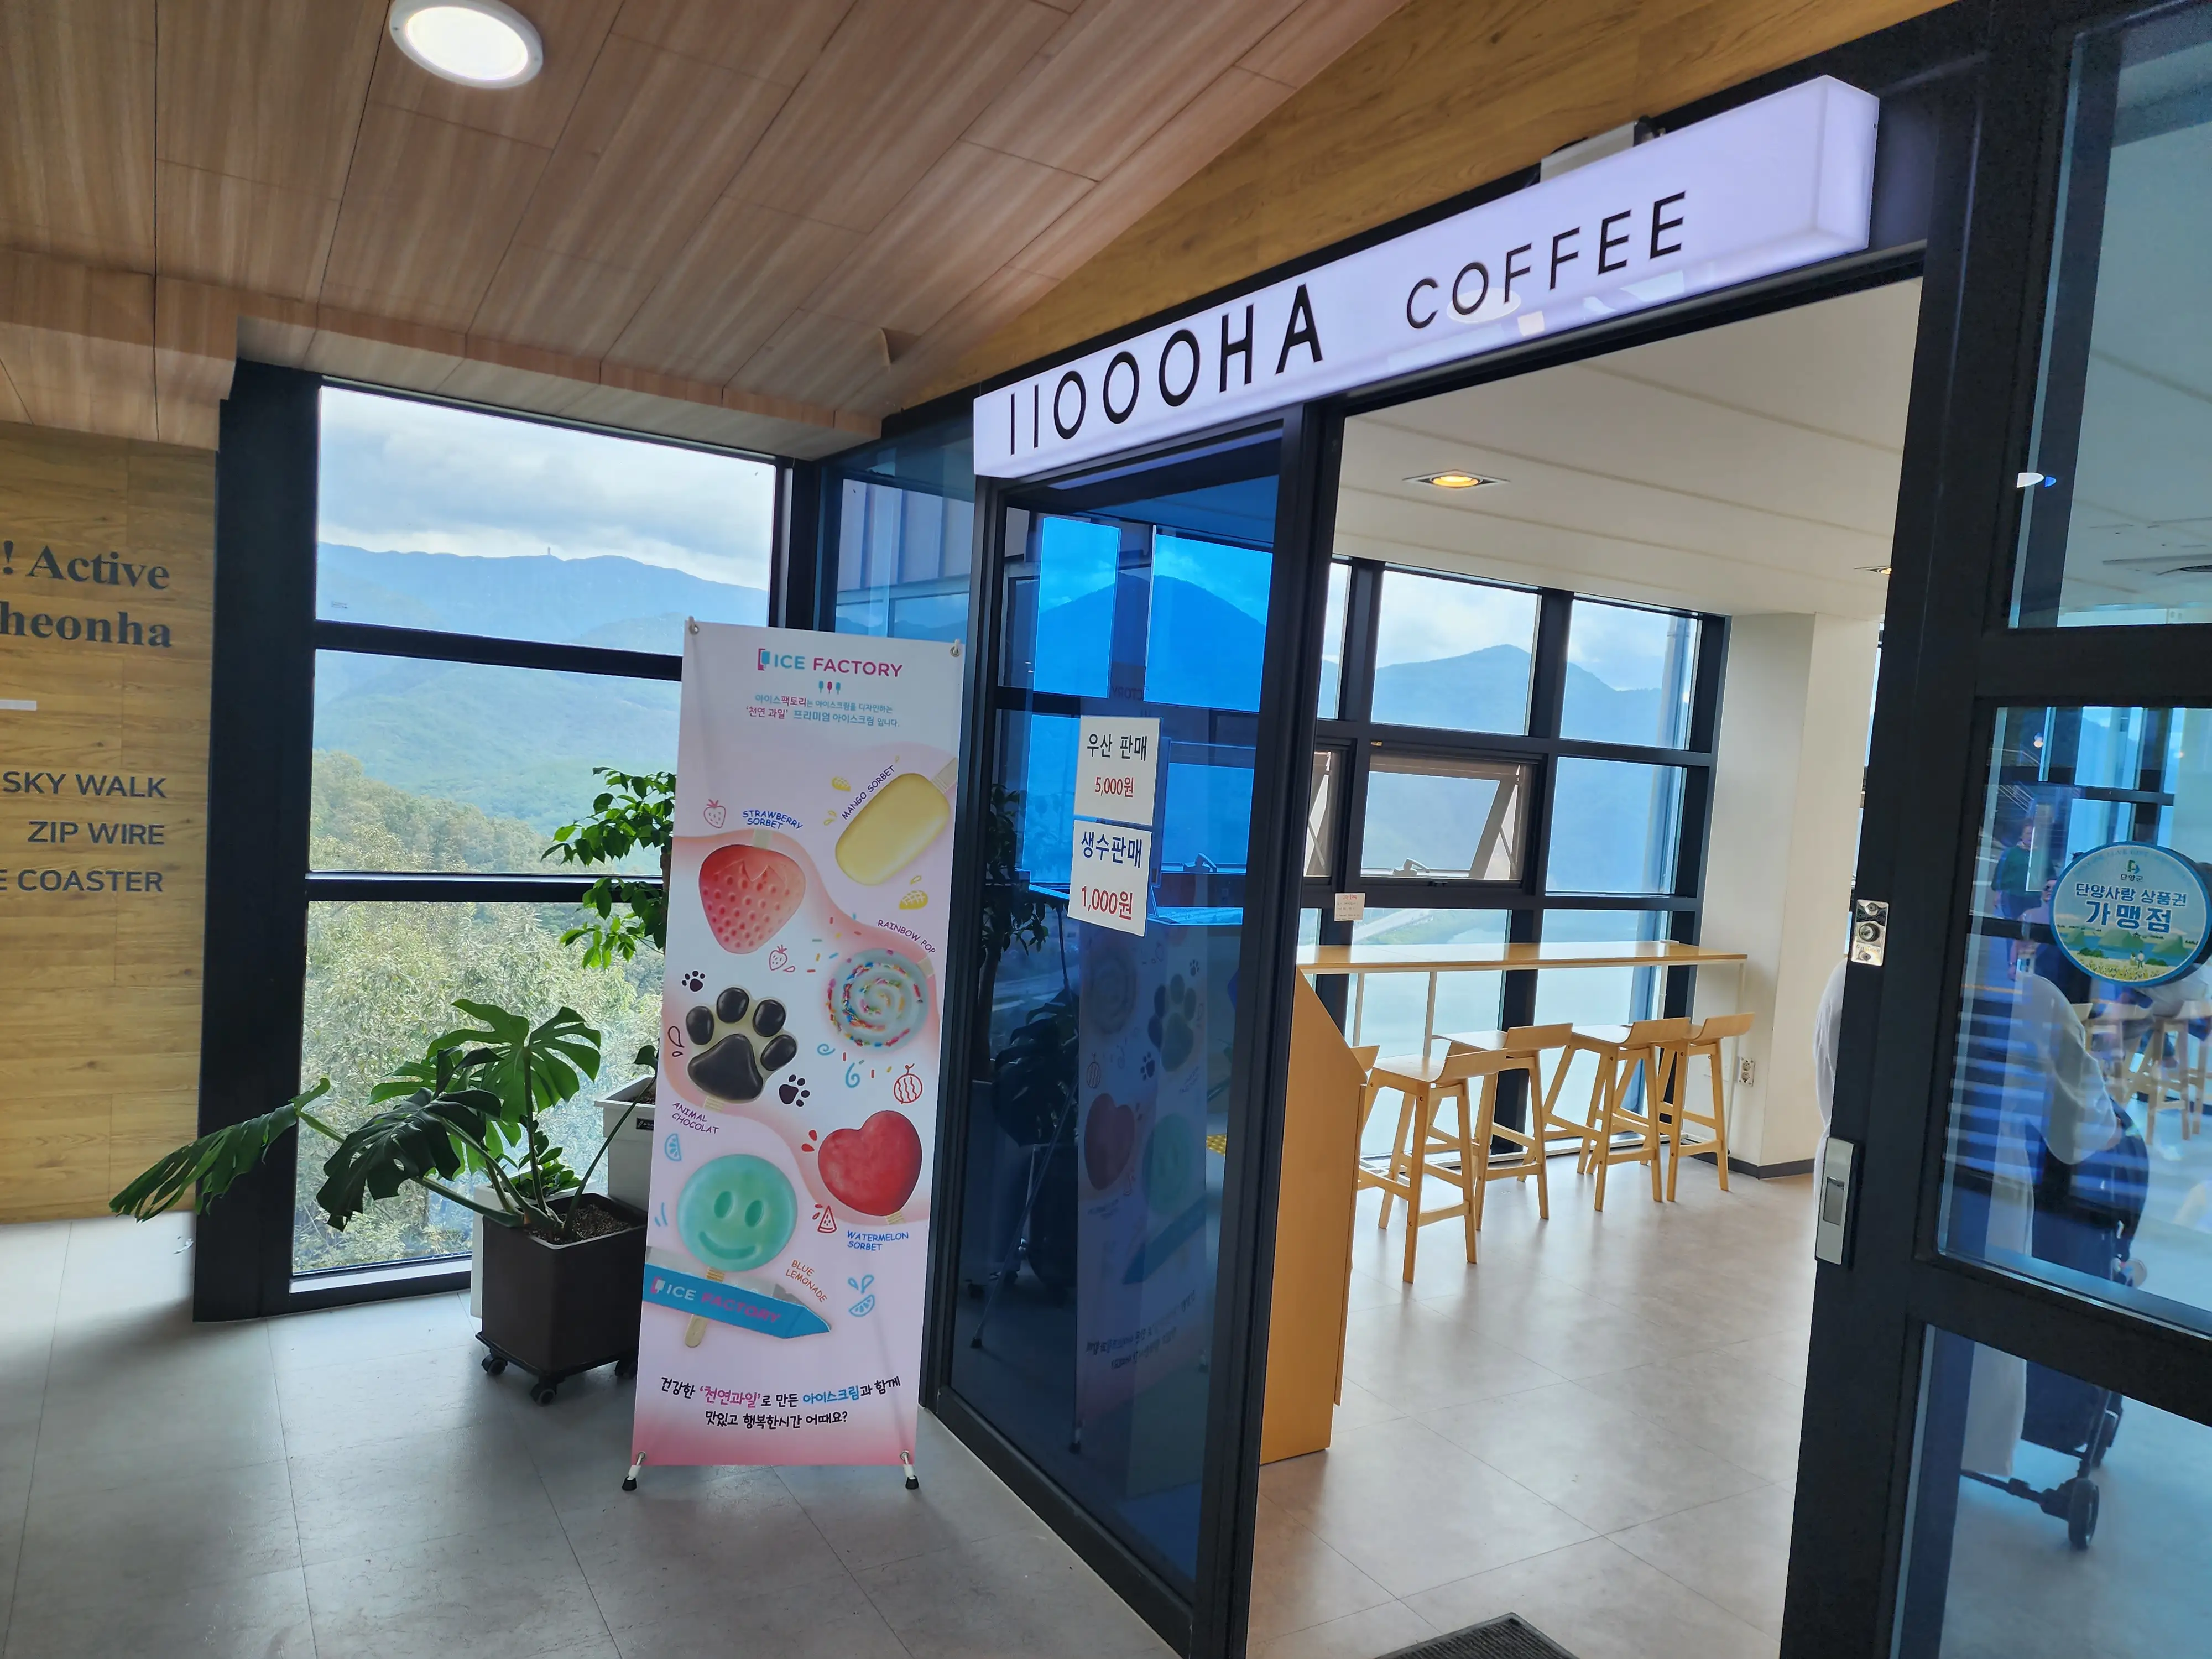 만천하 스카이워크 전망대 근처 카페의 입구 모습입니다.
커피라고 씌여져 있습니다.